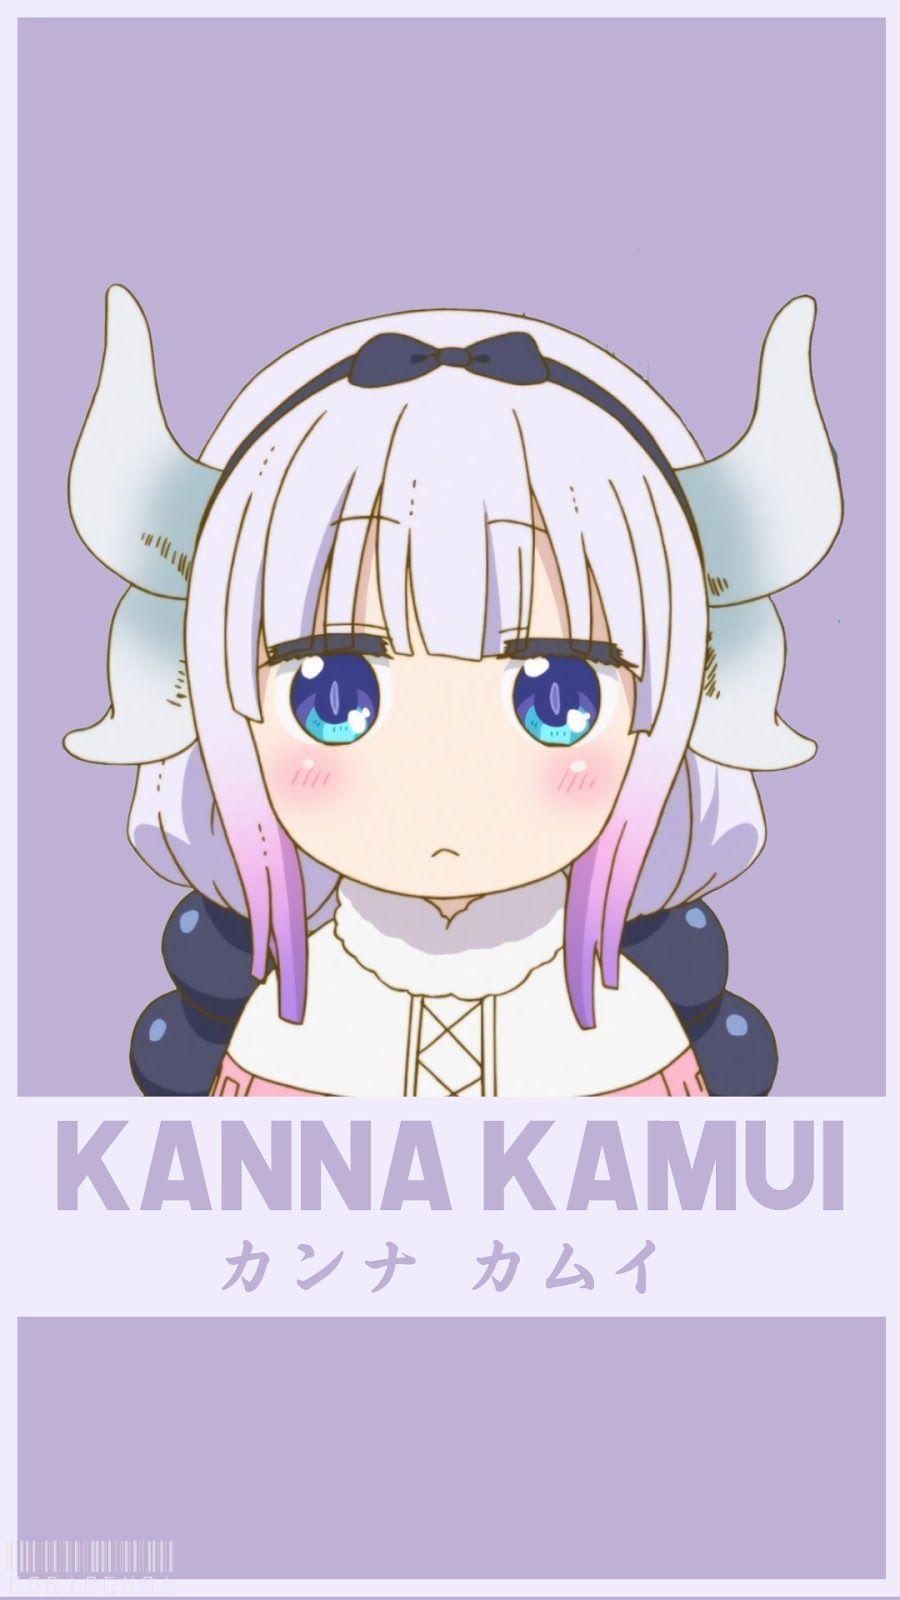 Kanna Kamui Wallpapers - Top Free Kanna Kamui Backgrounds - WallpaperAccess